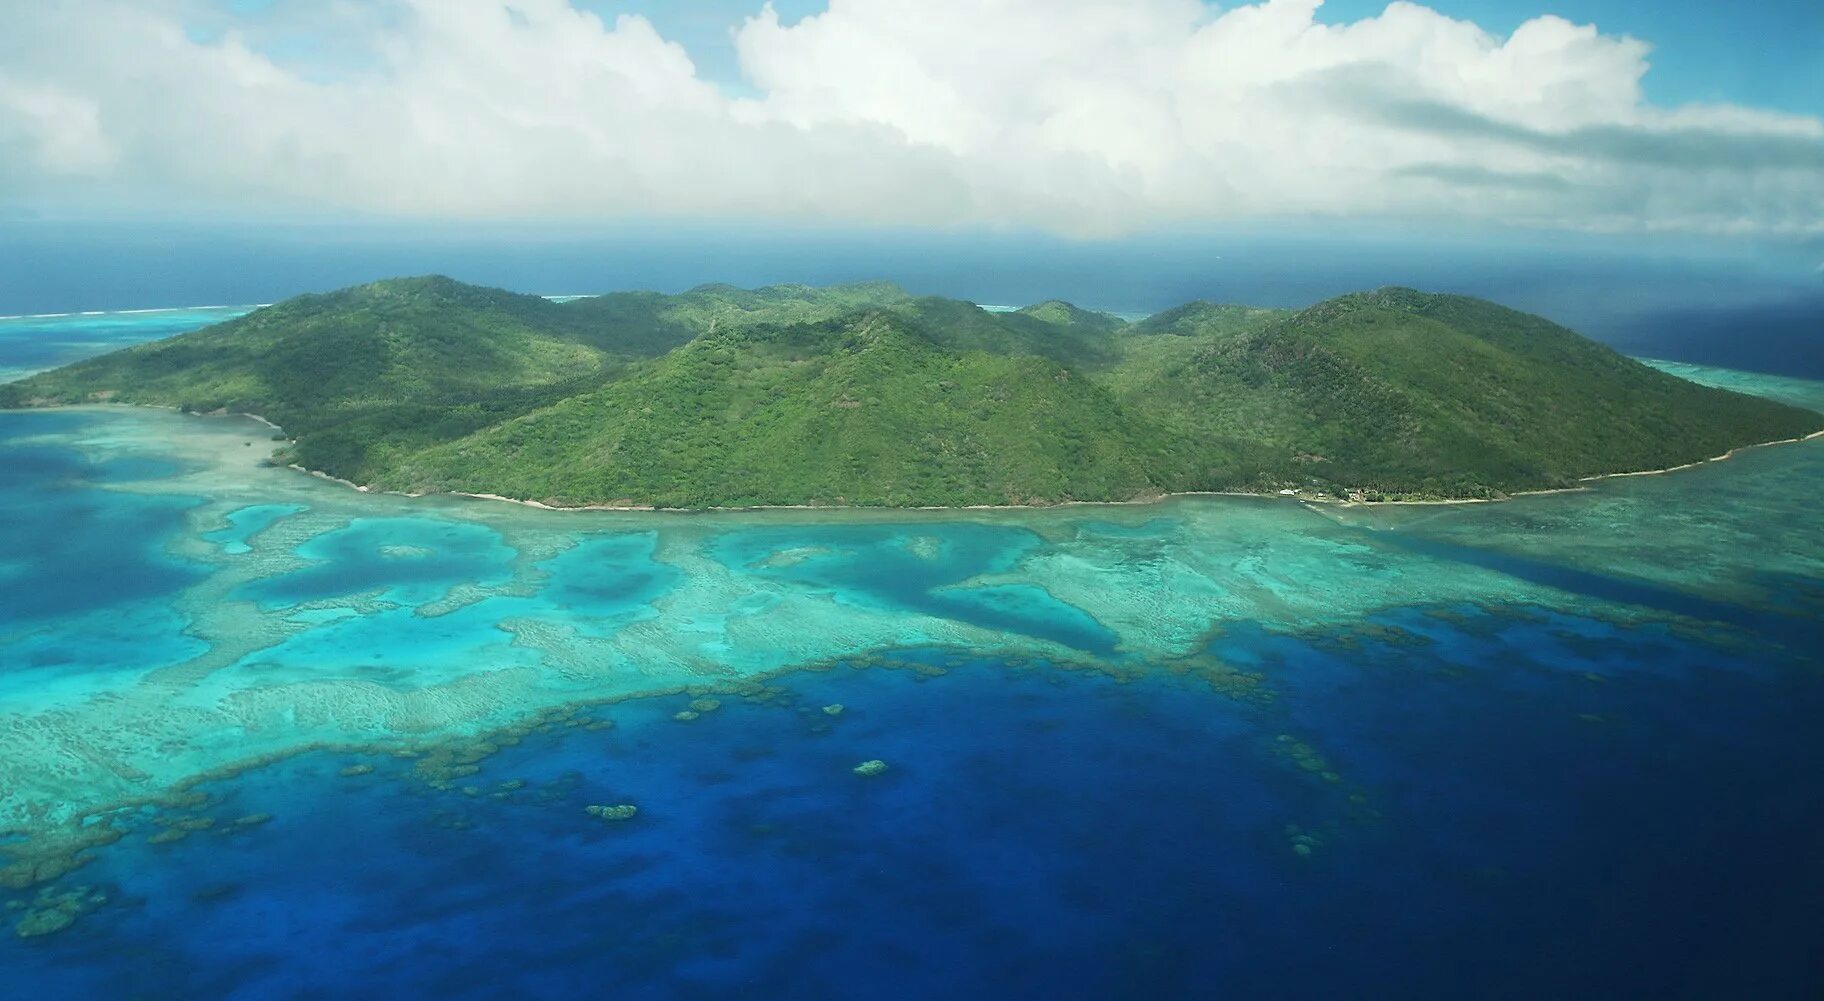 Южная часть тихого океана острова. Острова Лау, Фиджи. Фиджи Атолл. Каролинские острова Атолл. Коморские острова (архипелаг).